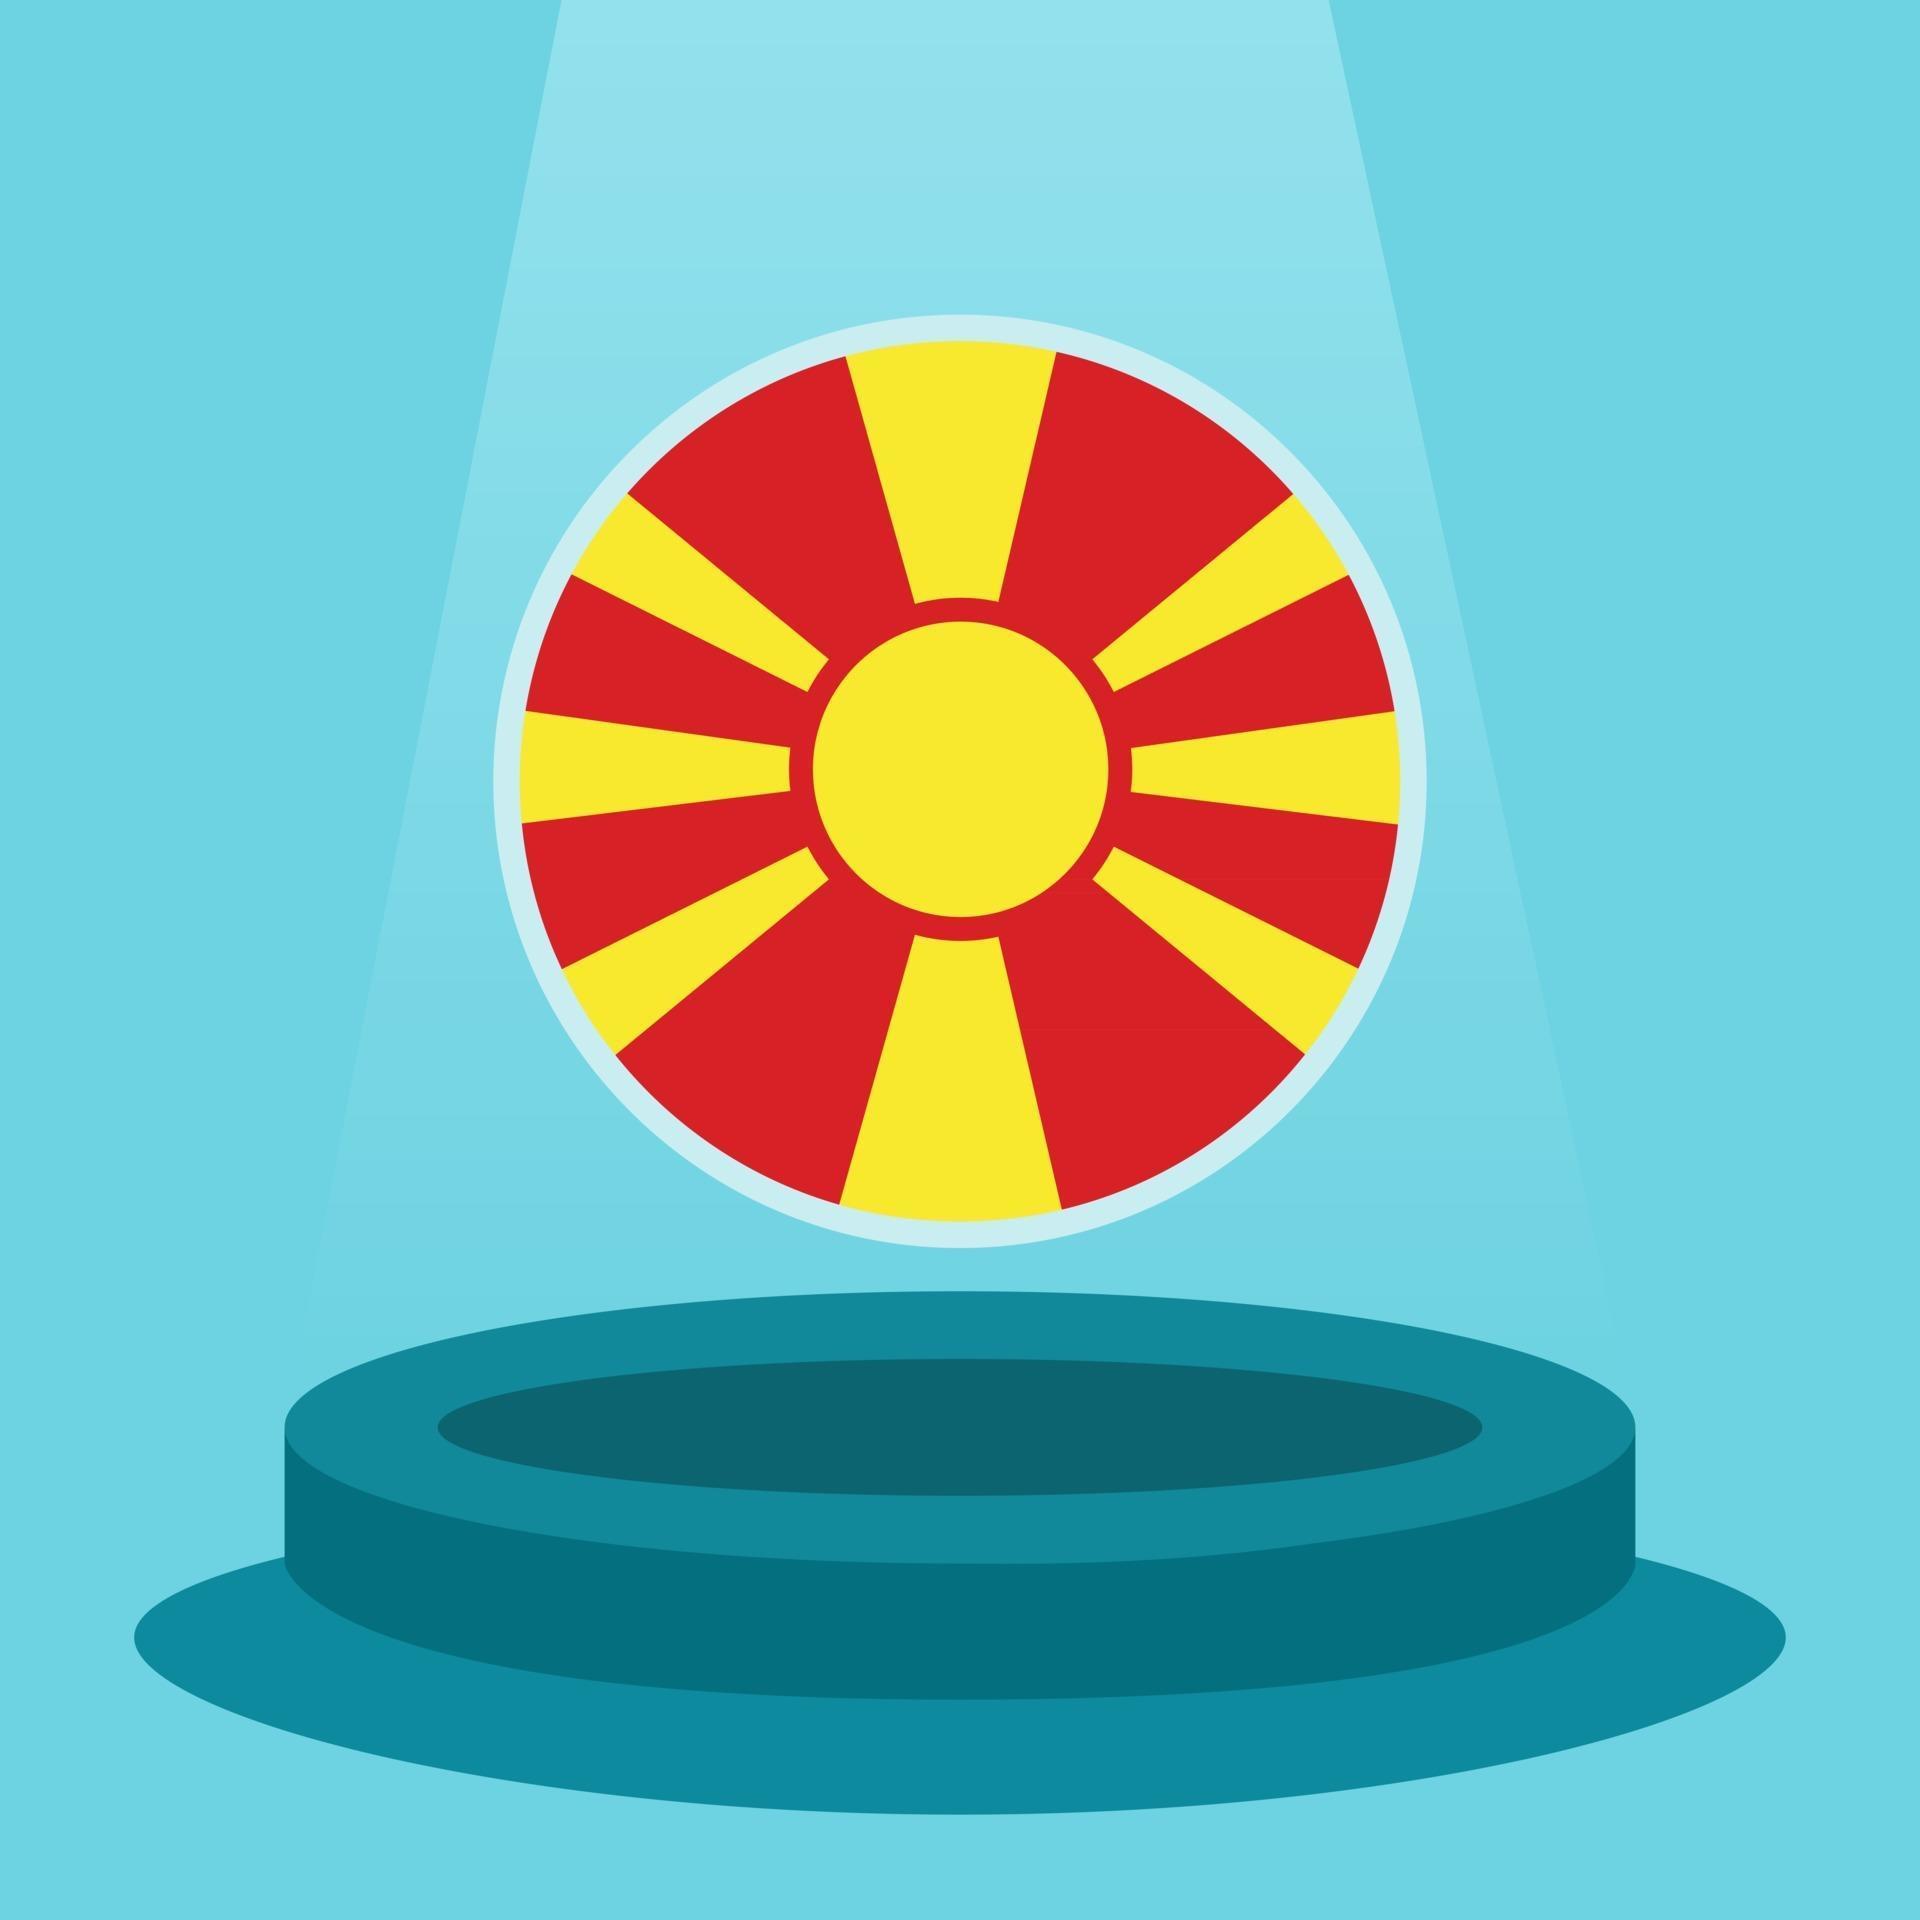 bandeira da Macedônia no pódio. estilo de design plano minimalista simples. pronto para usar para o evento de futebol etc. vetor